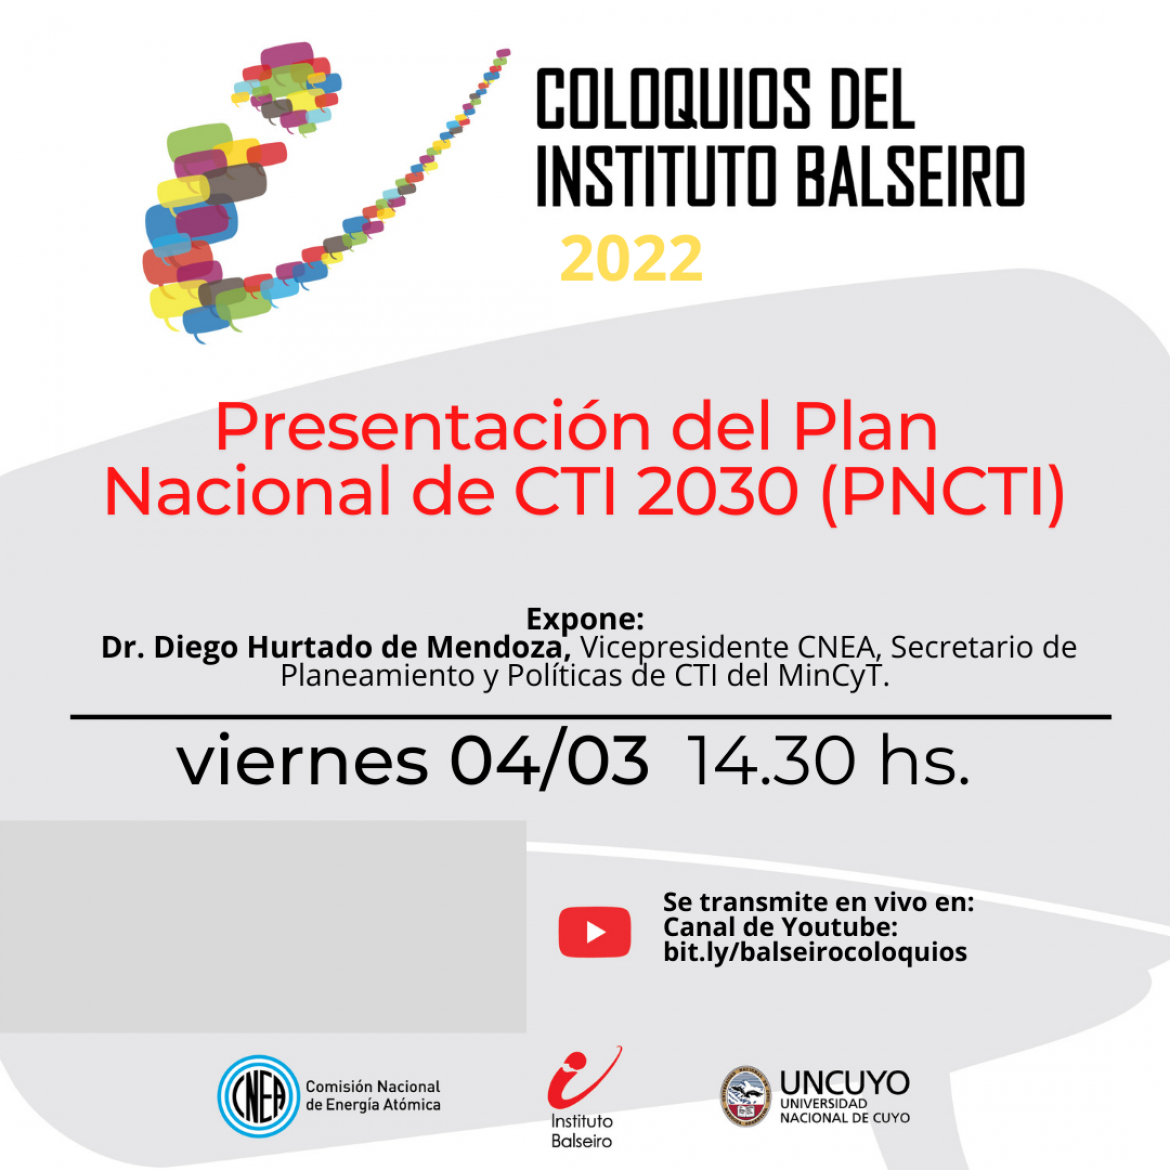 Coloquio del 04/03: Presentación del Plan Nacional de CTI 2030